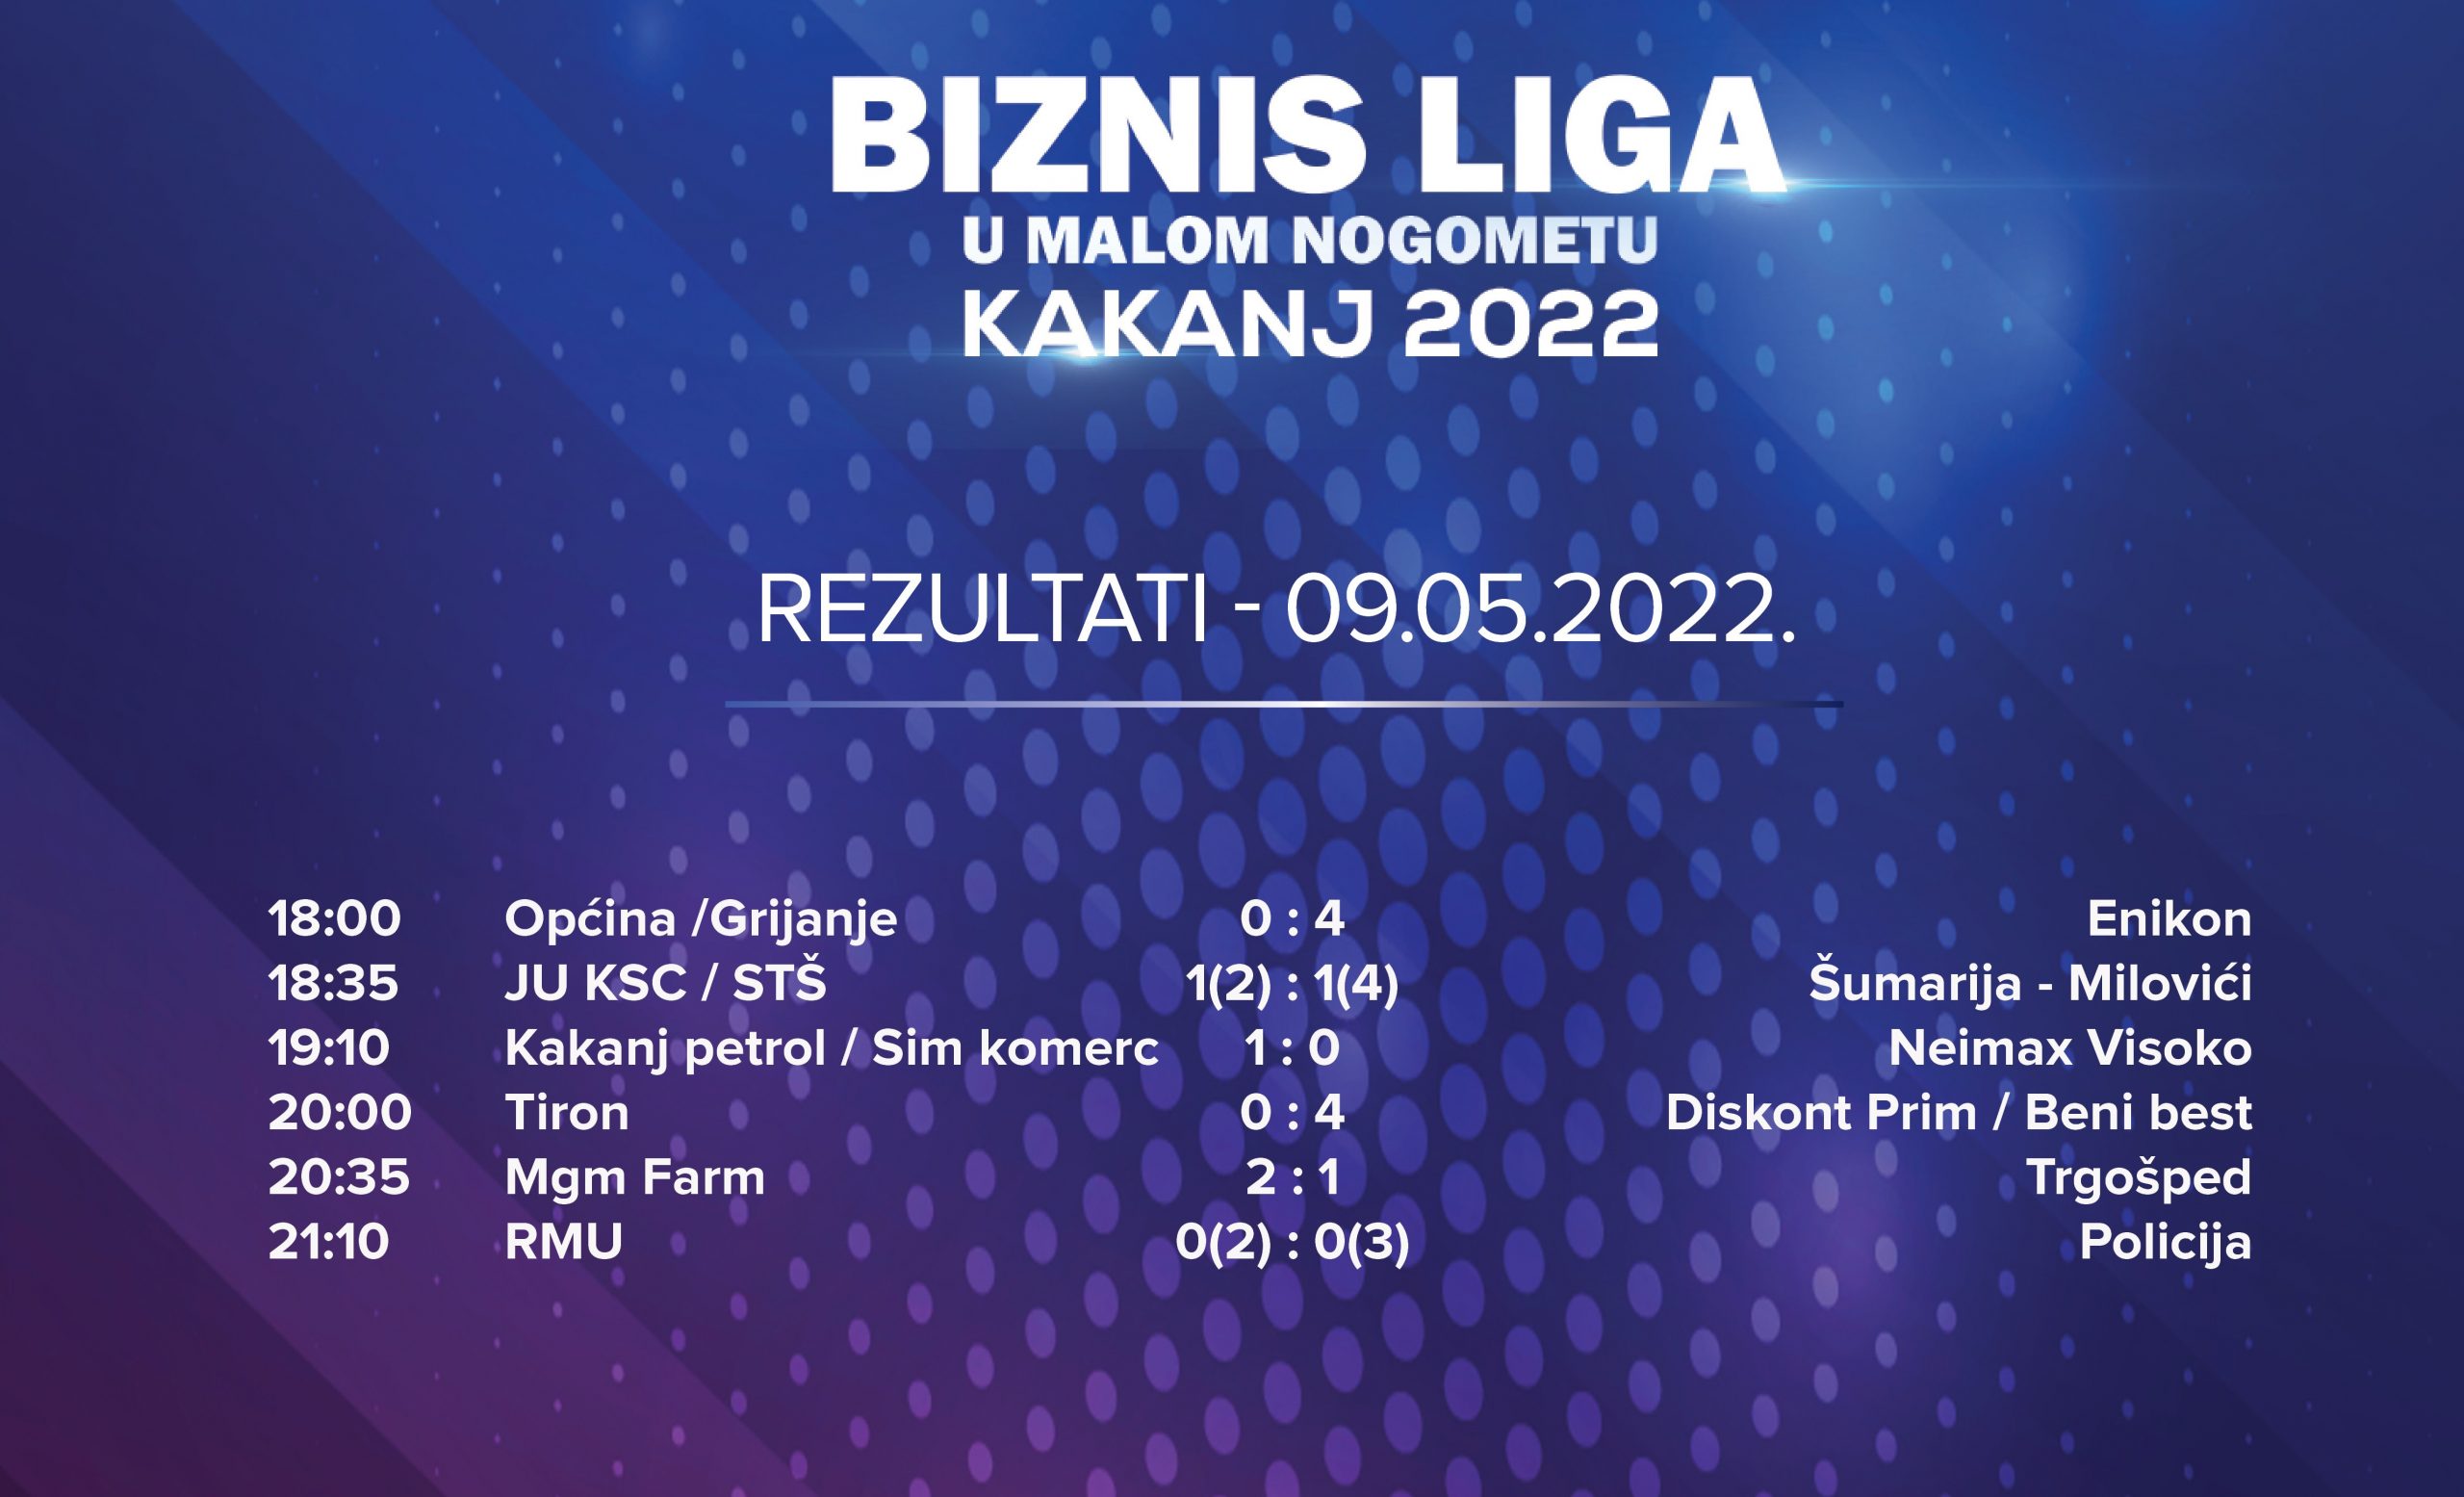 Biznis liga “Kakanj 2022” – Rezultati utakmica za prvi takmičarski dan i zapisnik